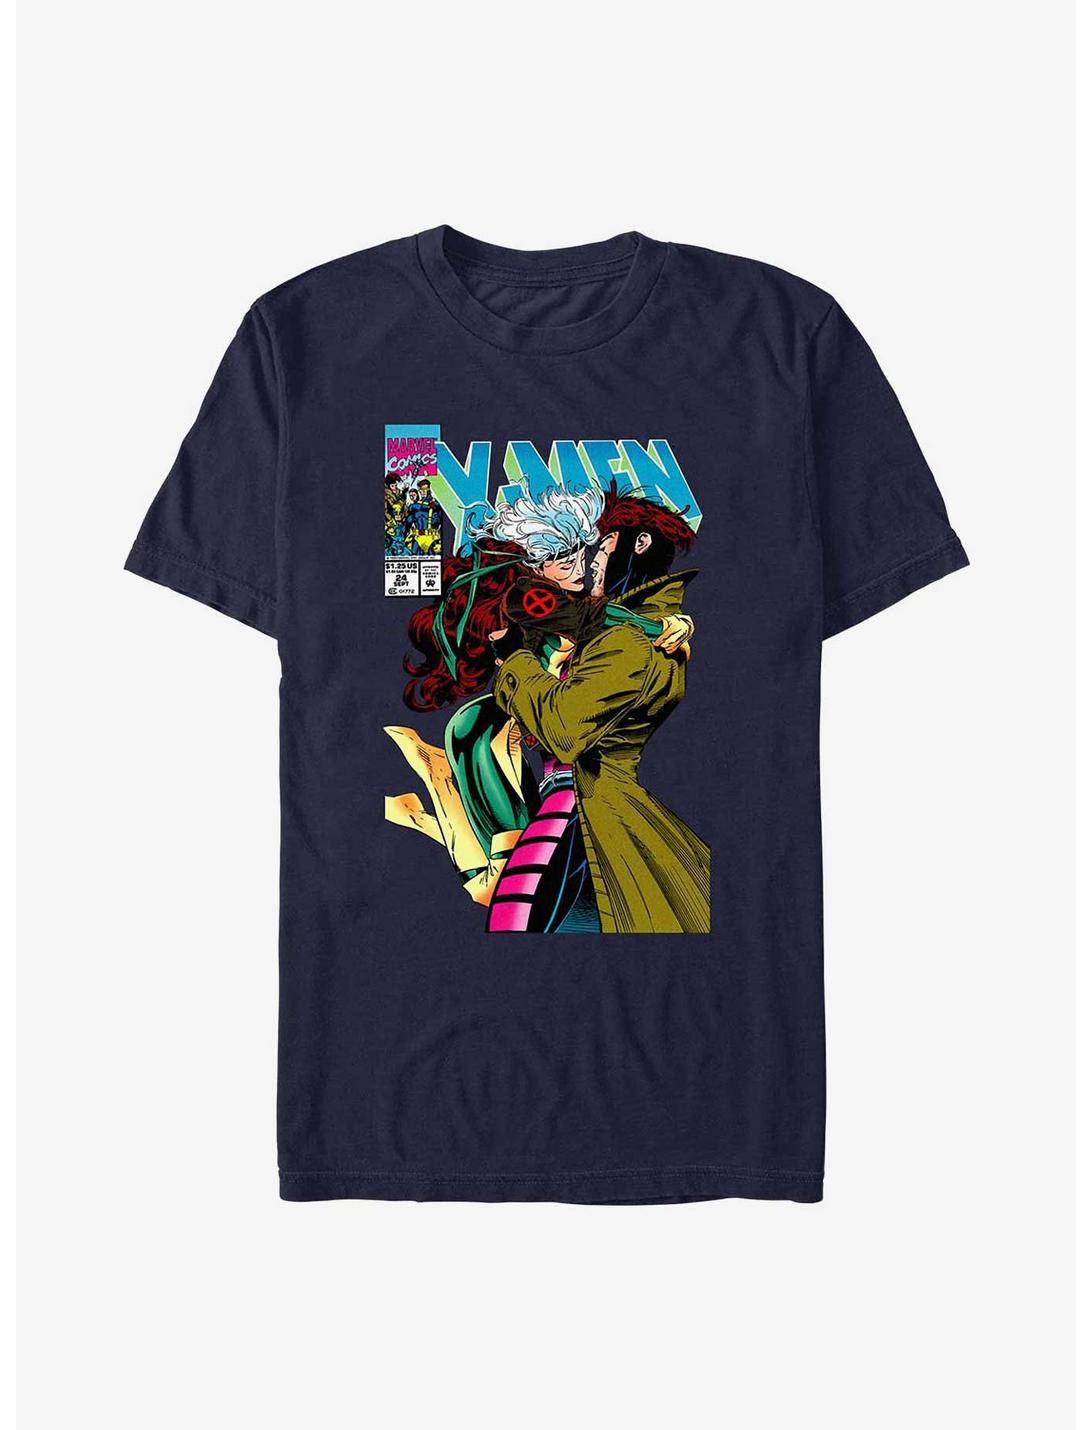 X-Men Rogue & Gambit 4Eva T-Shirt, NAVY, hi-res